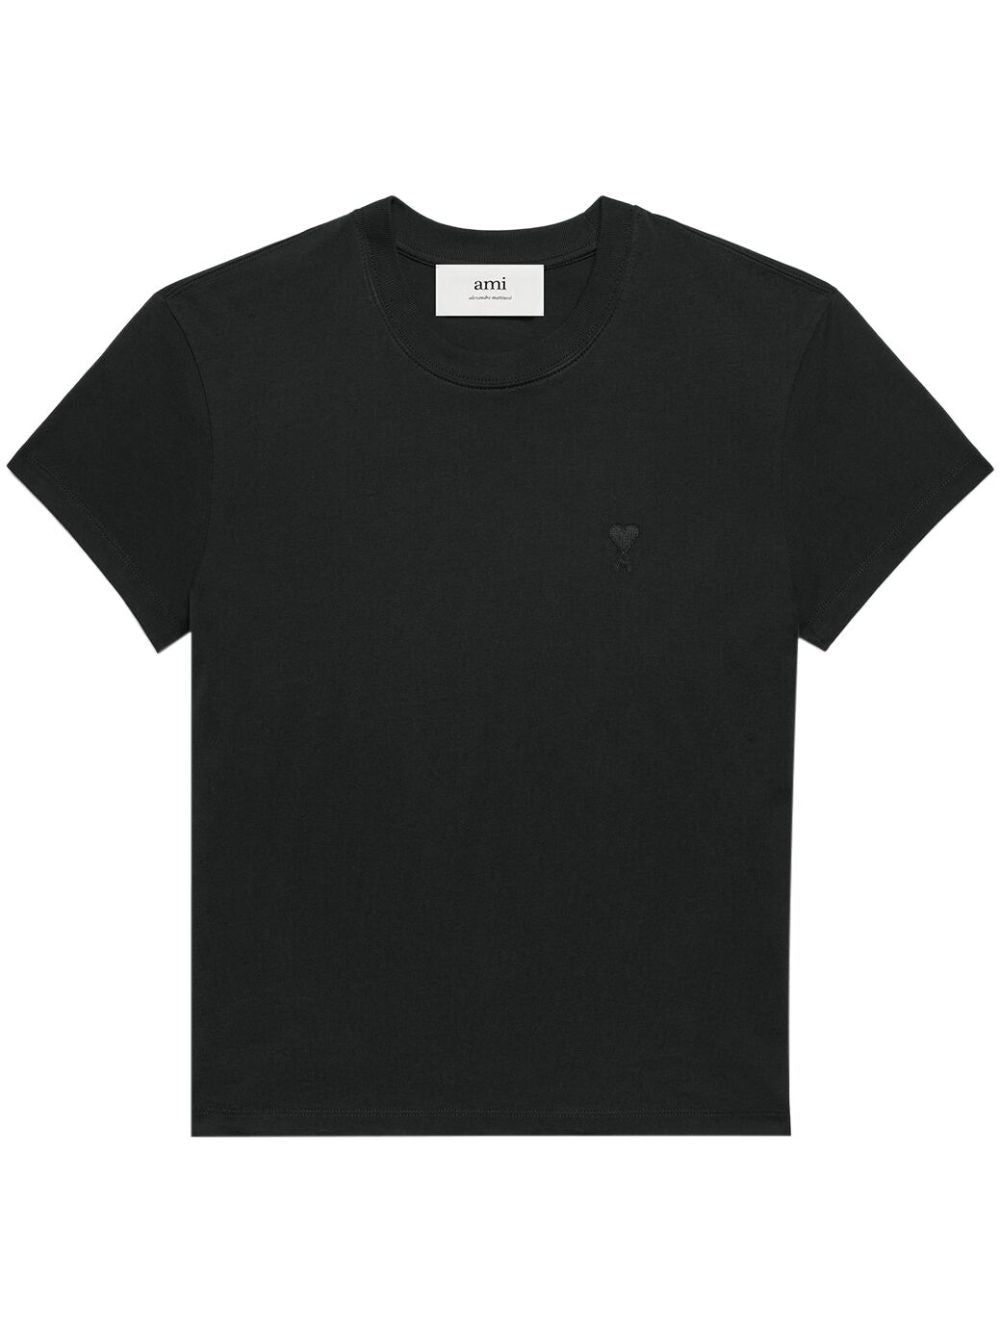 AMI Paris - T-Shirt noir Coeur brodé - Lothaire